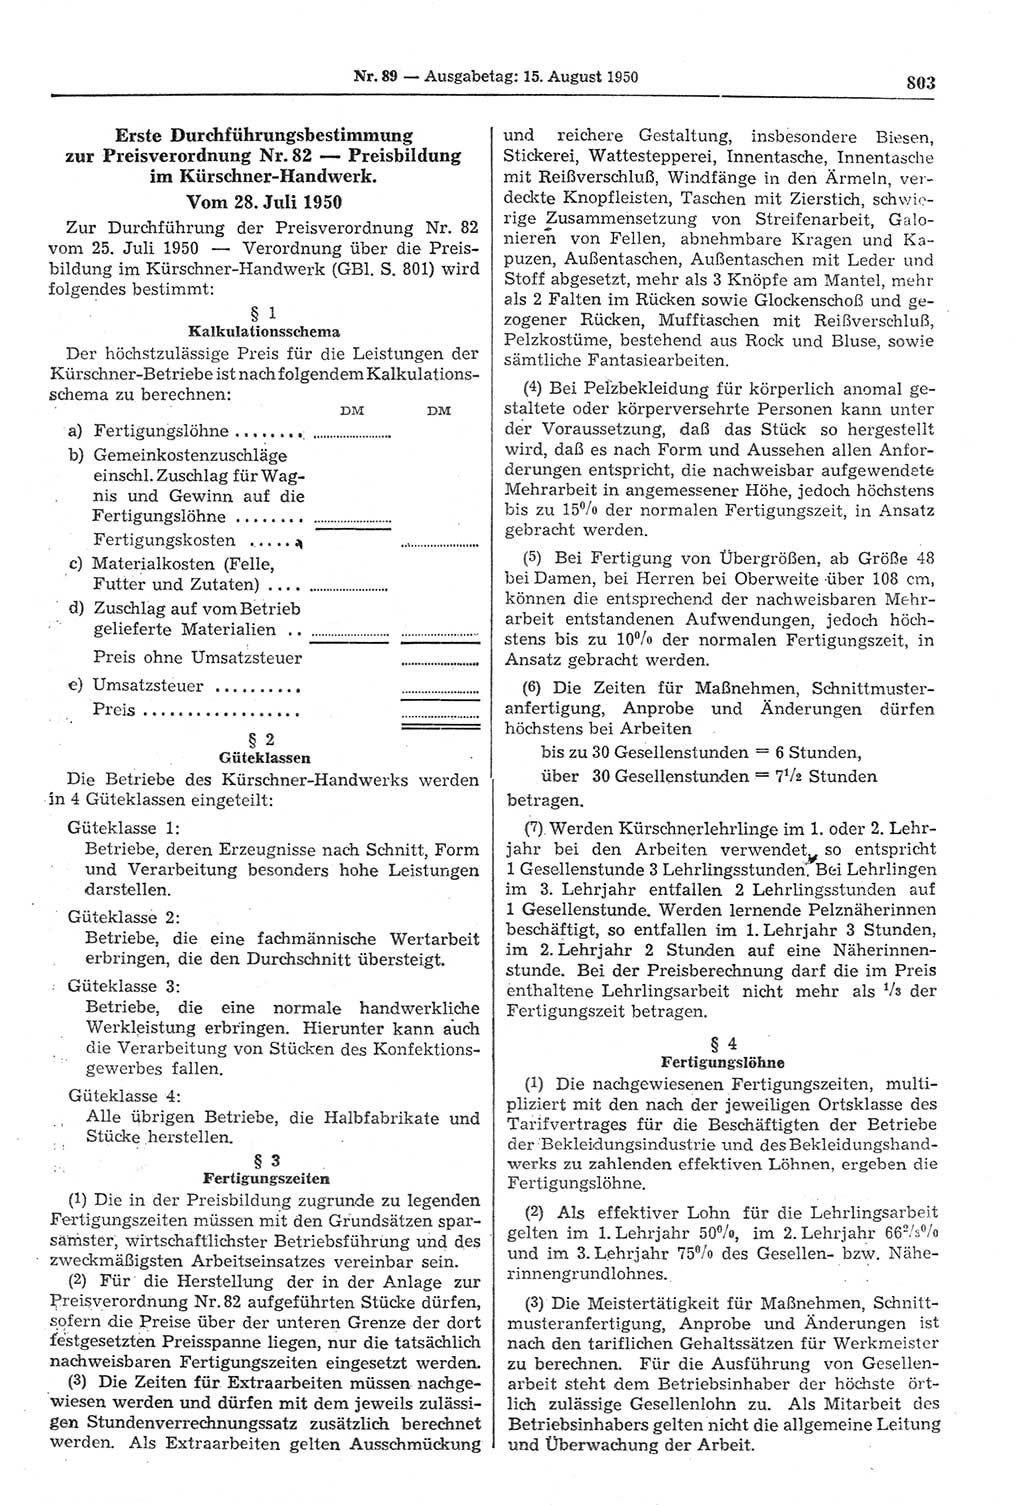 Gesetzblatt (GBl.) der Deutschen Demokratischen Republik (DDR) 1950, Seite 803 (GBl. DDR 1950, S. 803)